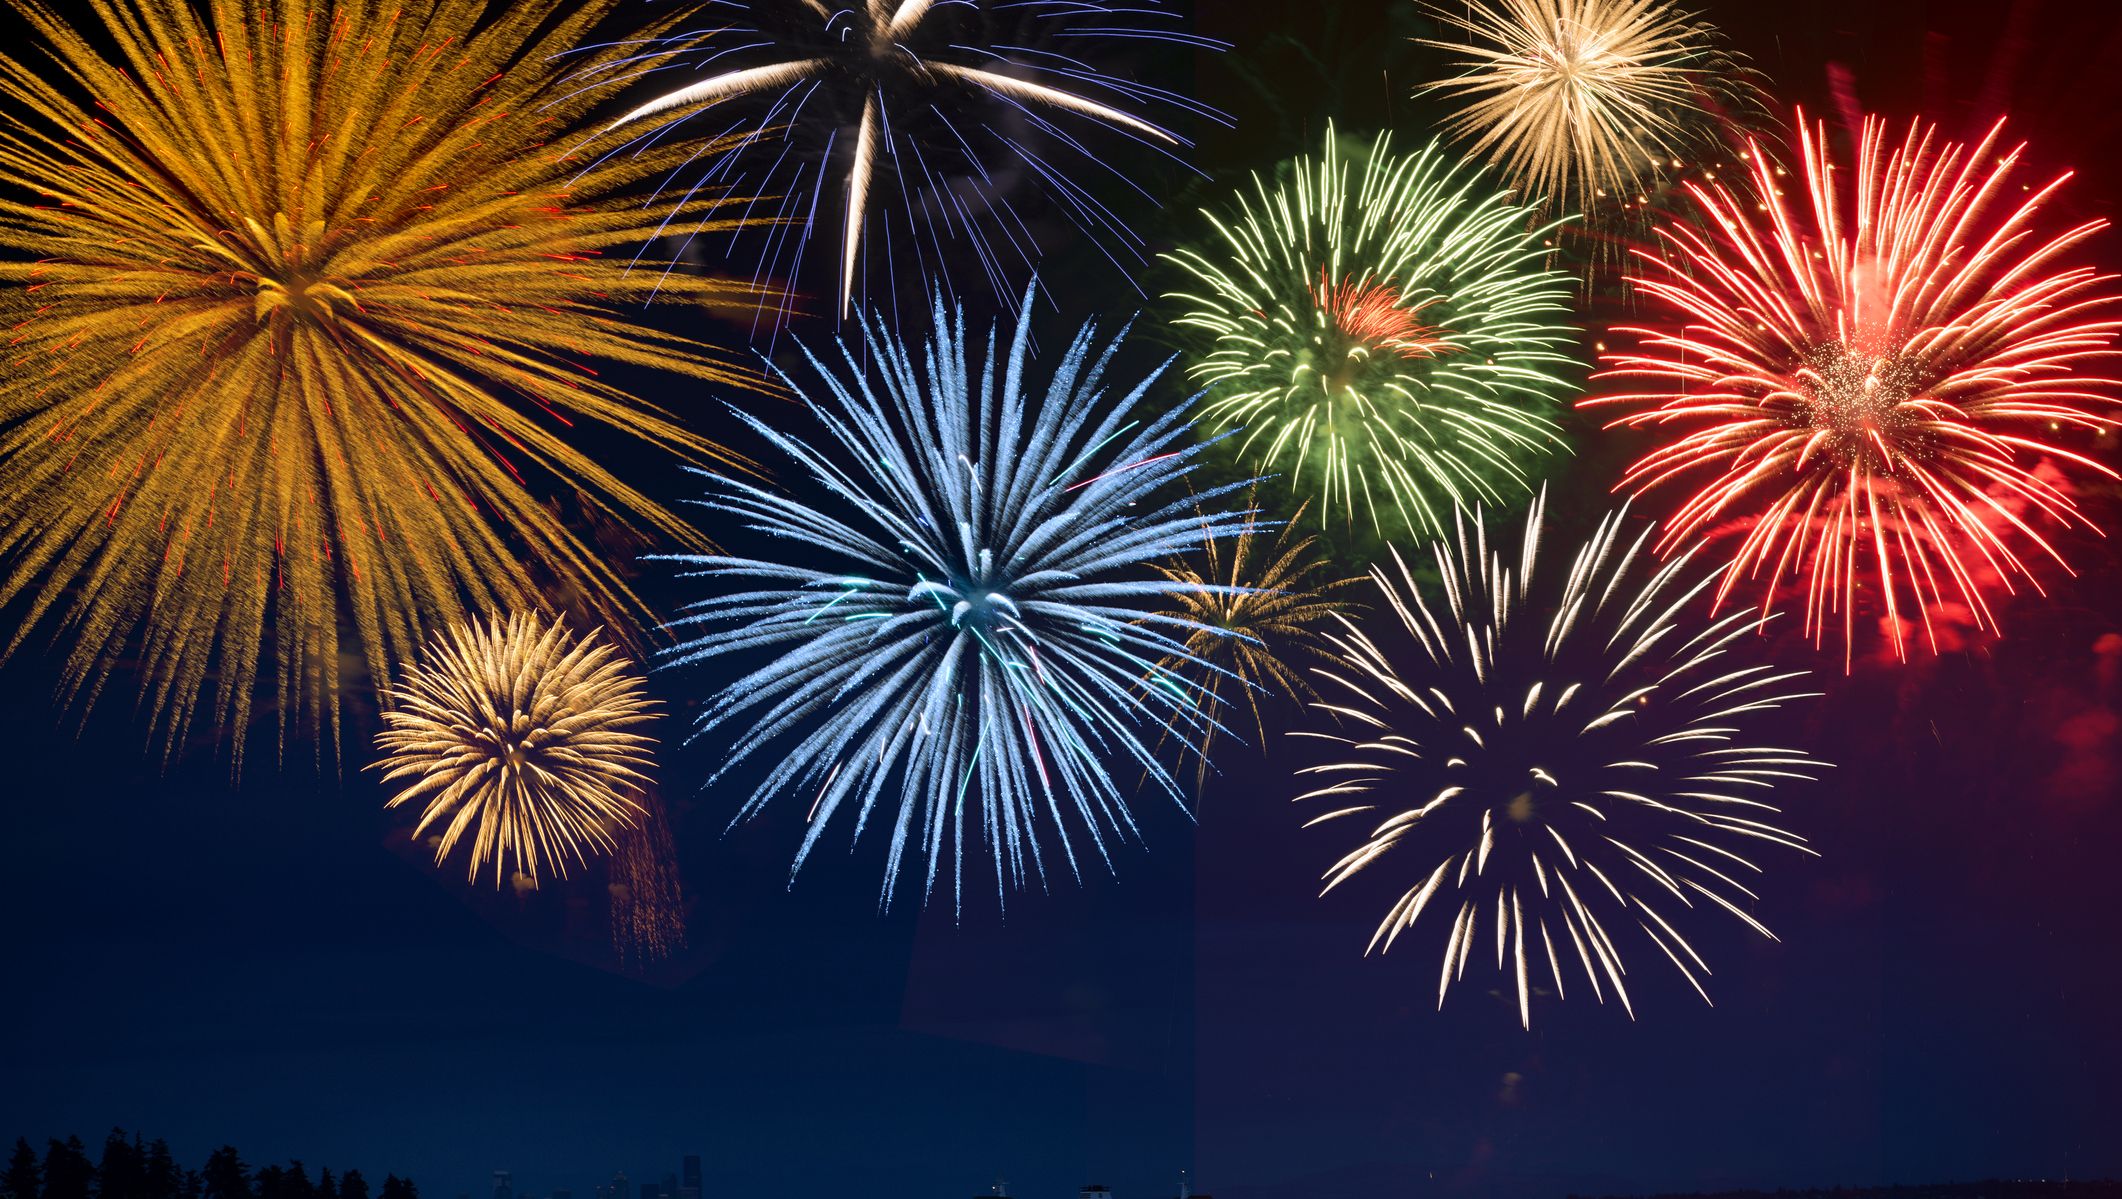 Fireworks exploding over cruise ship in bay, Seattle, Washington, United States